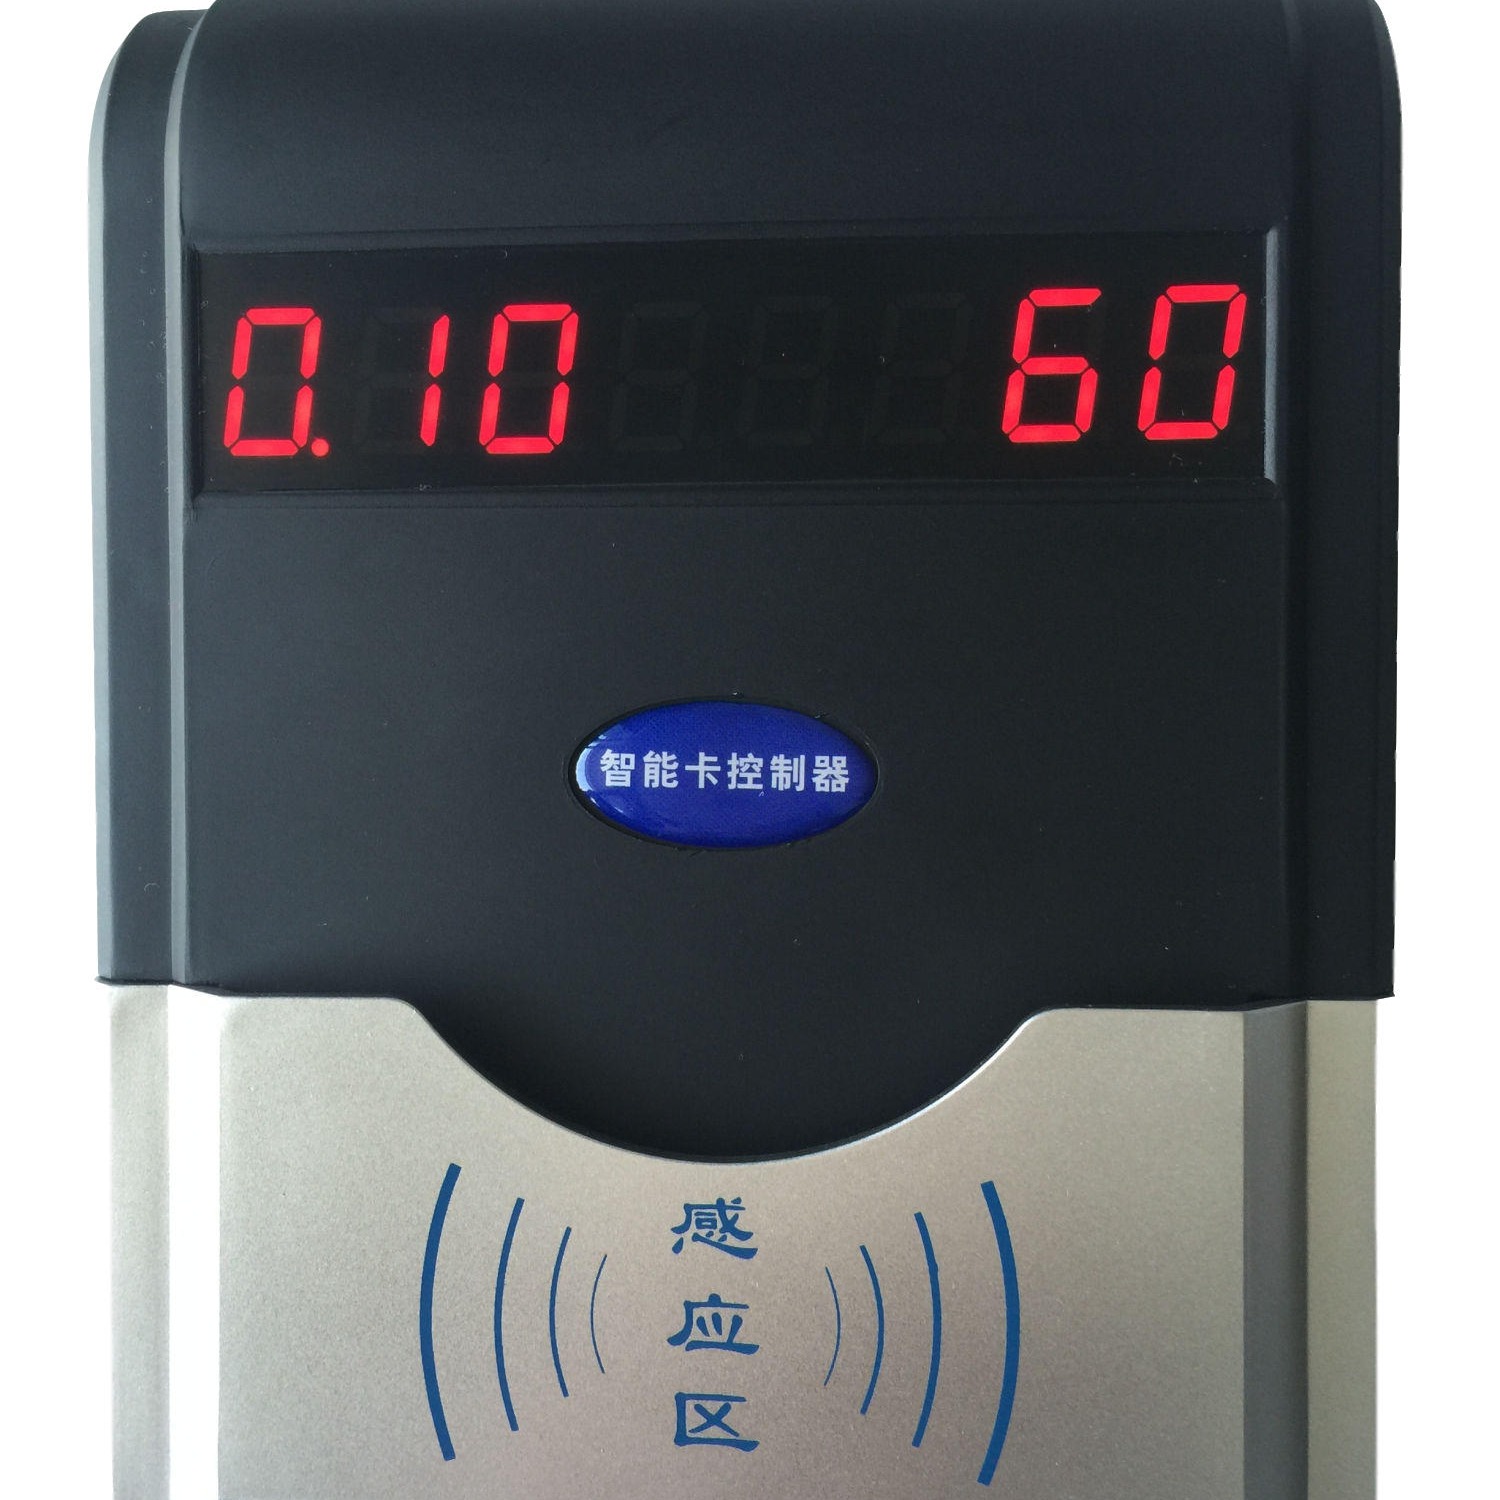 兴天下HF-660智能ic卡水控机,智能刷卡取水系统 IC卡淋浴控水系统